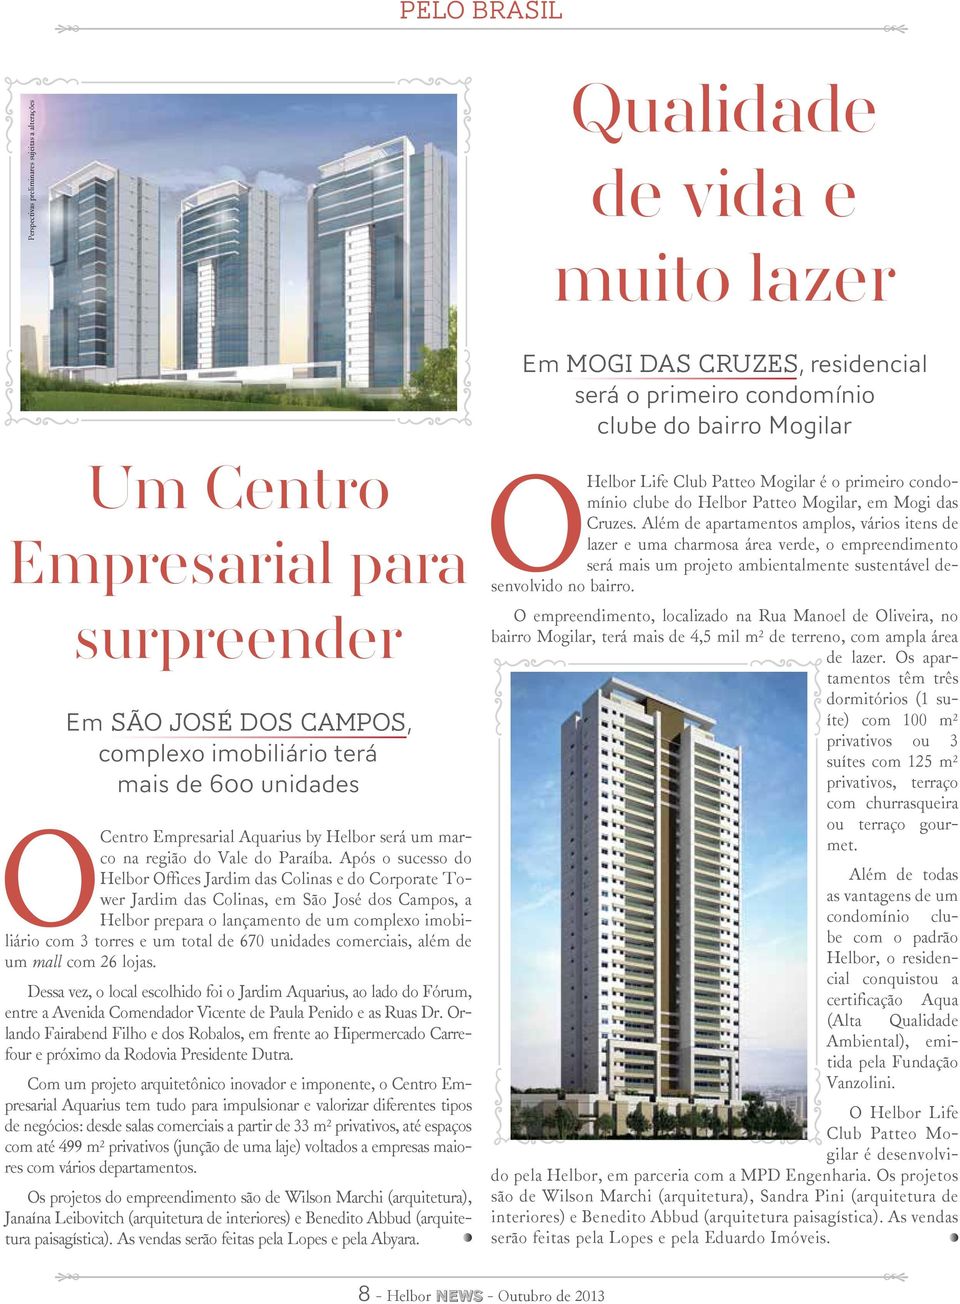 Após o sucesso do Helbor Offices Jardim das Colinas e do Corporate Tower Jardim das Colinas, em São José dos Campos, a Helbor prepara o lançamento de um complexo imobiliário com 3 torres e um total